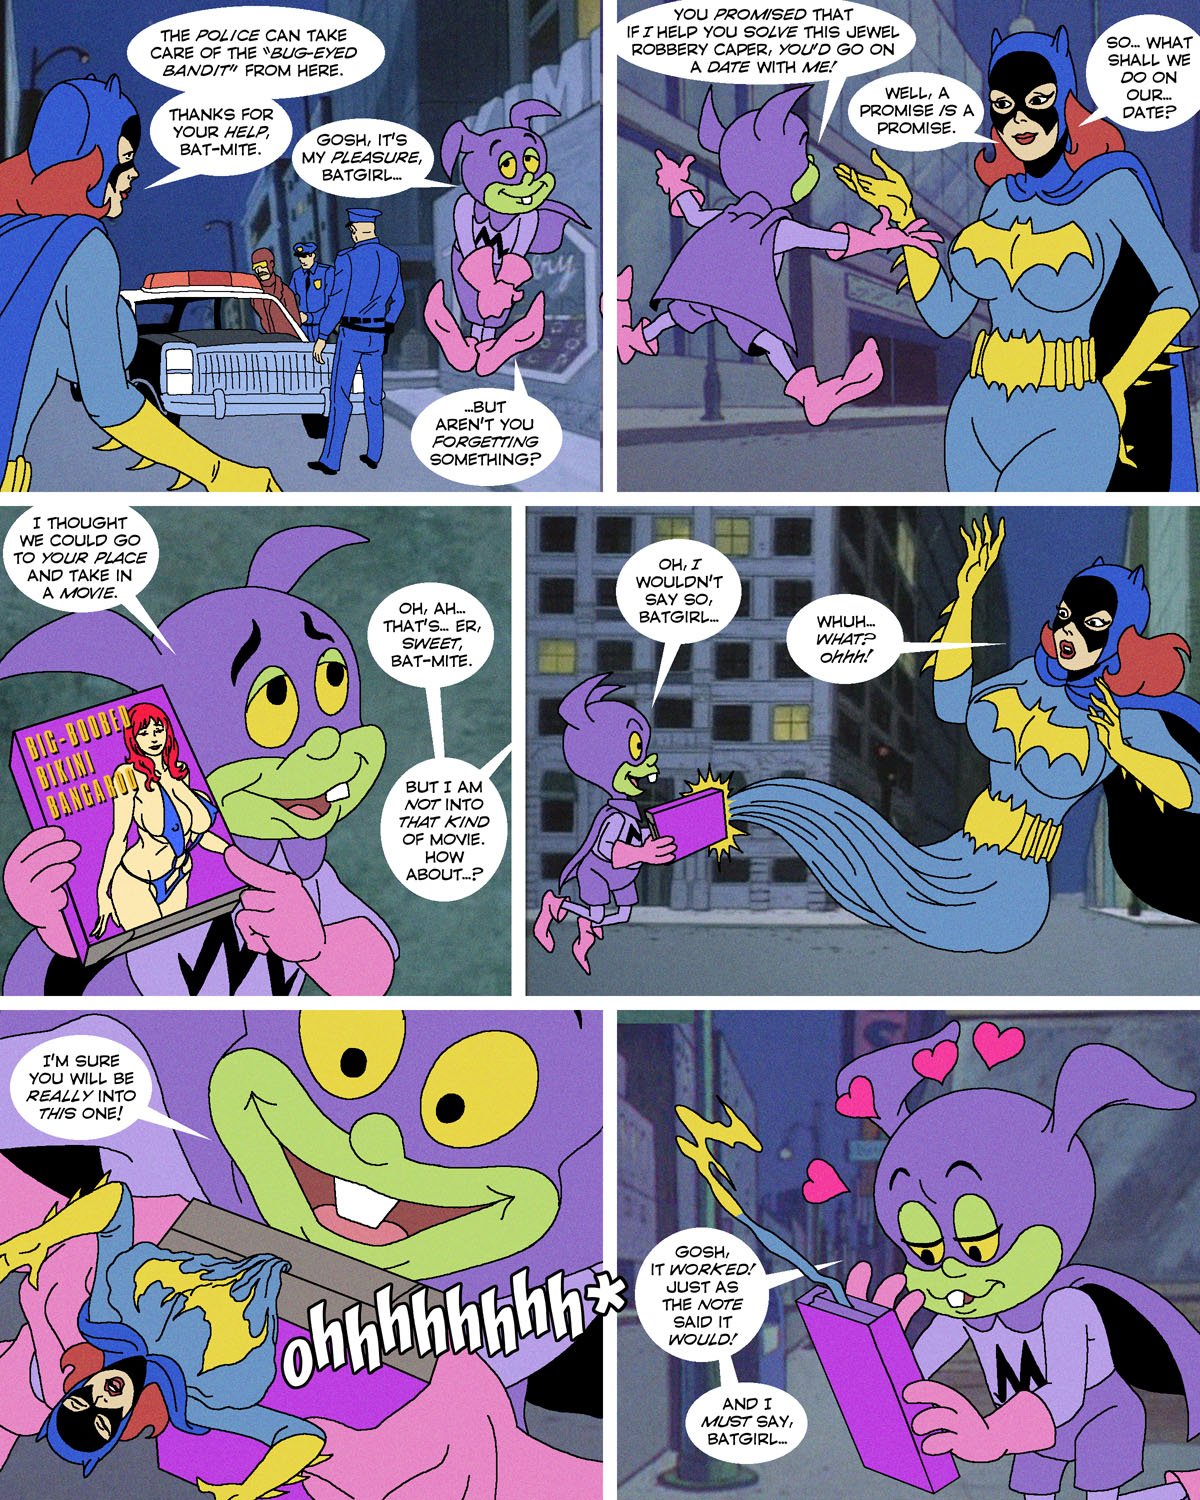 Bangaroos Com Porn - The New Adventures of Batgirl: Video Dating comic porn - HD Porn Comics